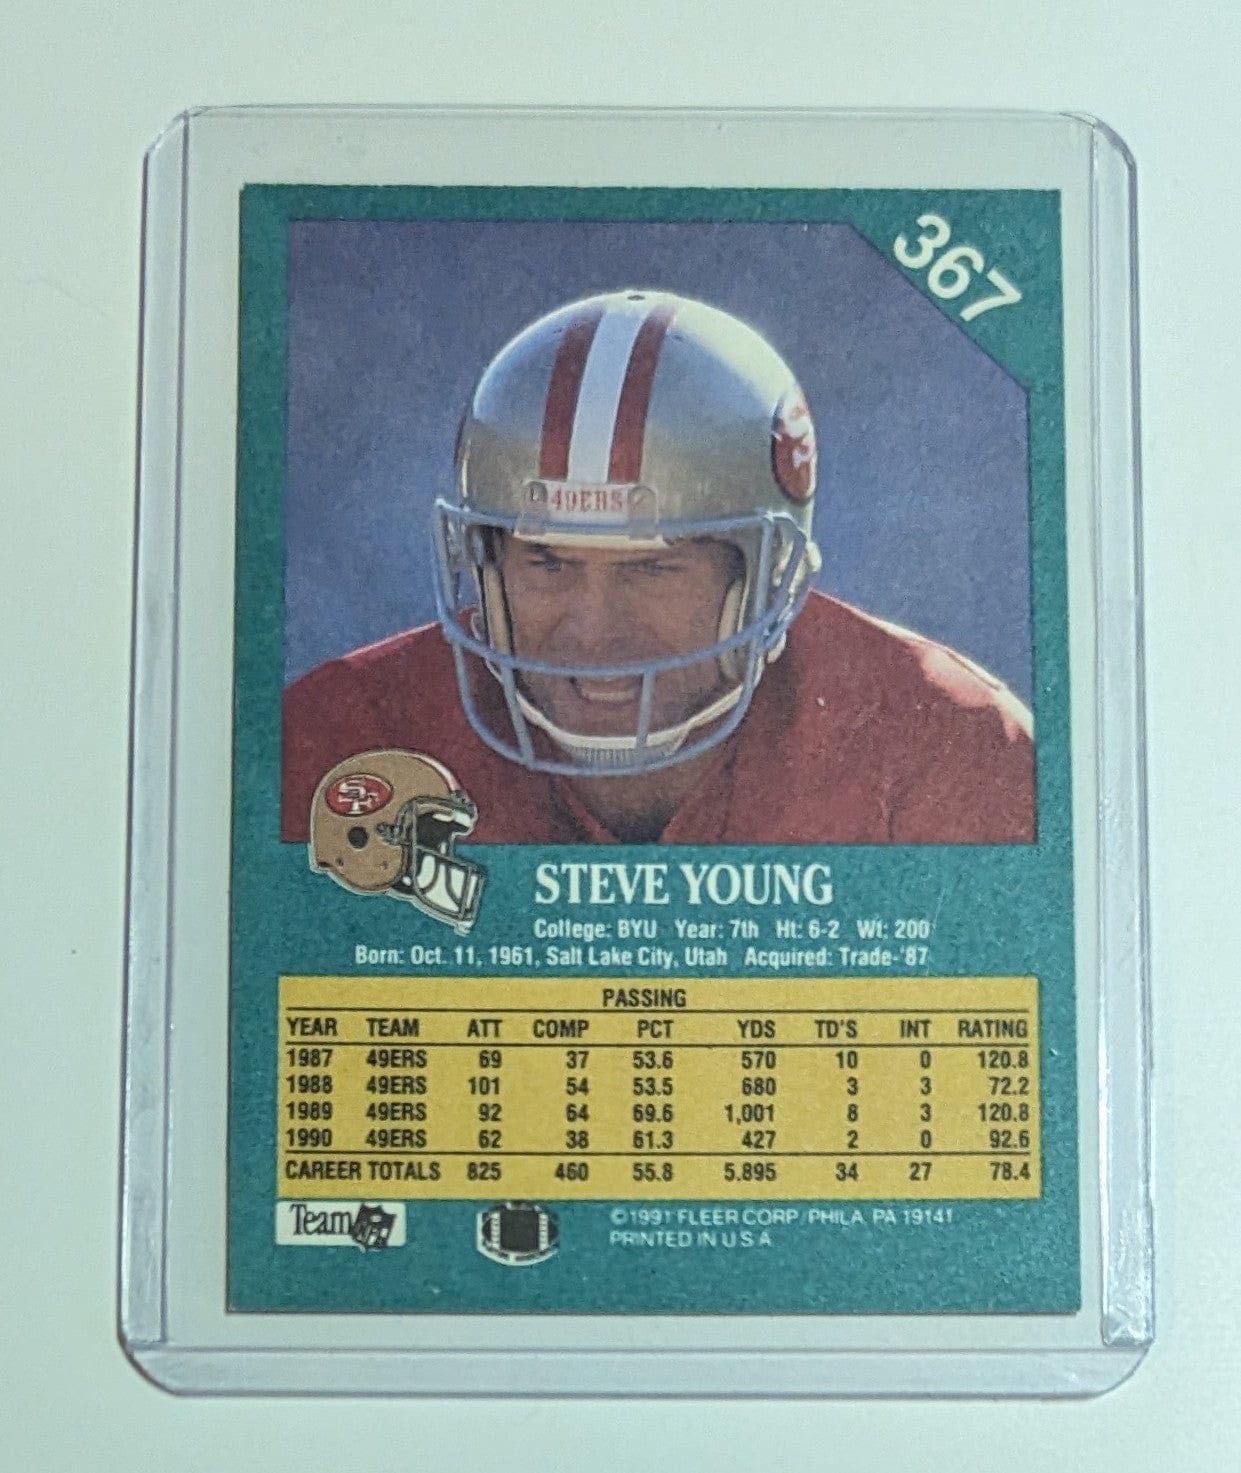 FIINR Football Card 1991 Fleer Steve Young Football Card #367 - Mint Condition